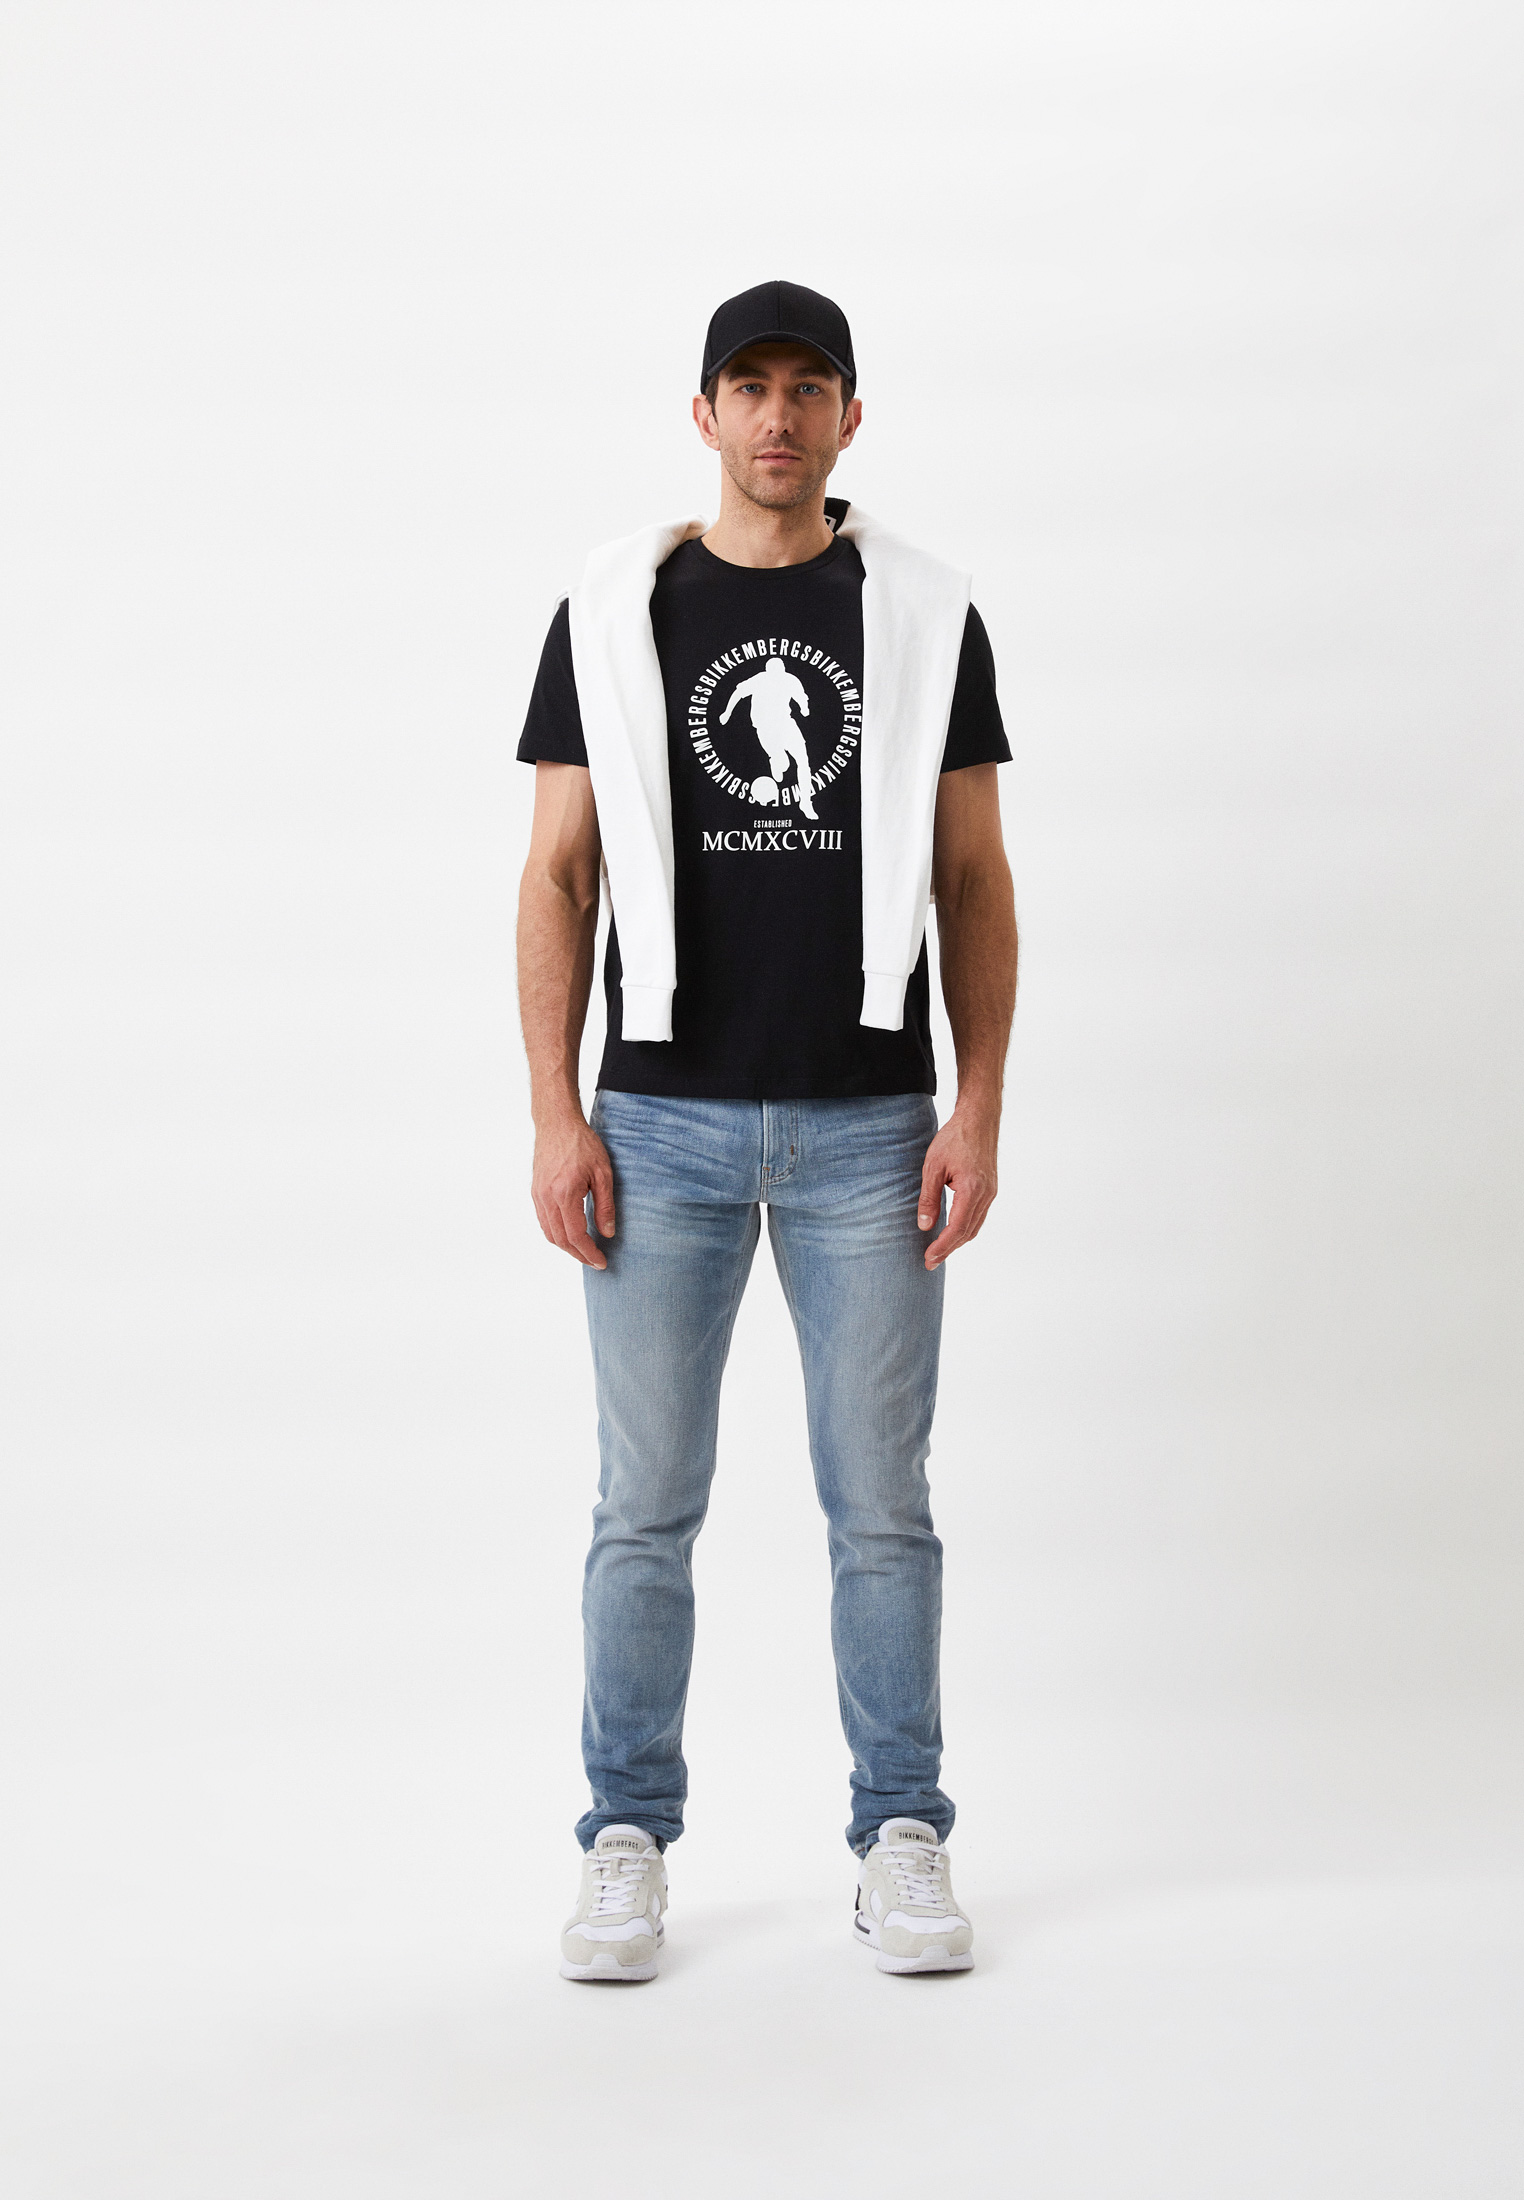 Мужская футболка Bikkembergs (Биккембергс) C 4 101 1D E 2359: изображение 2